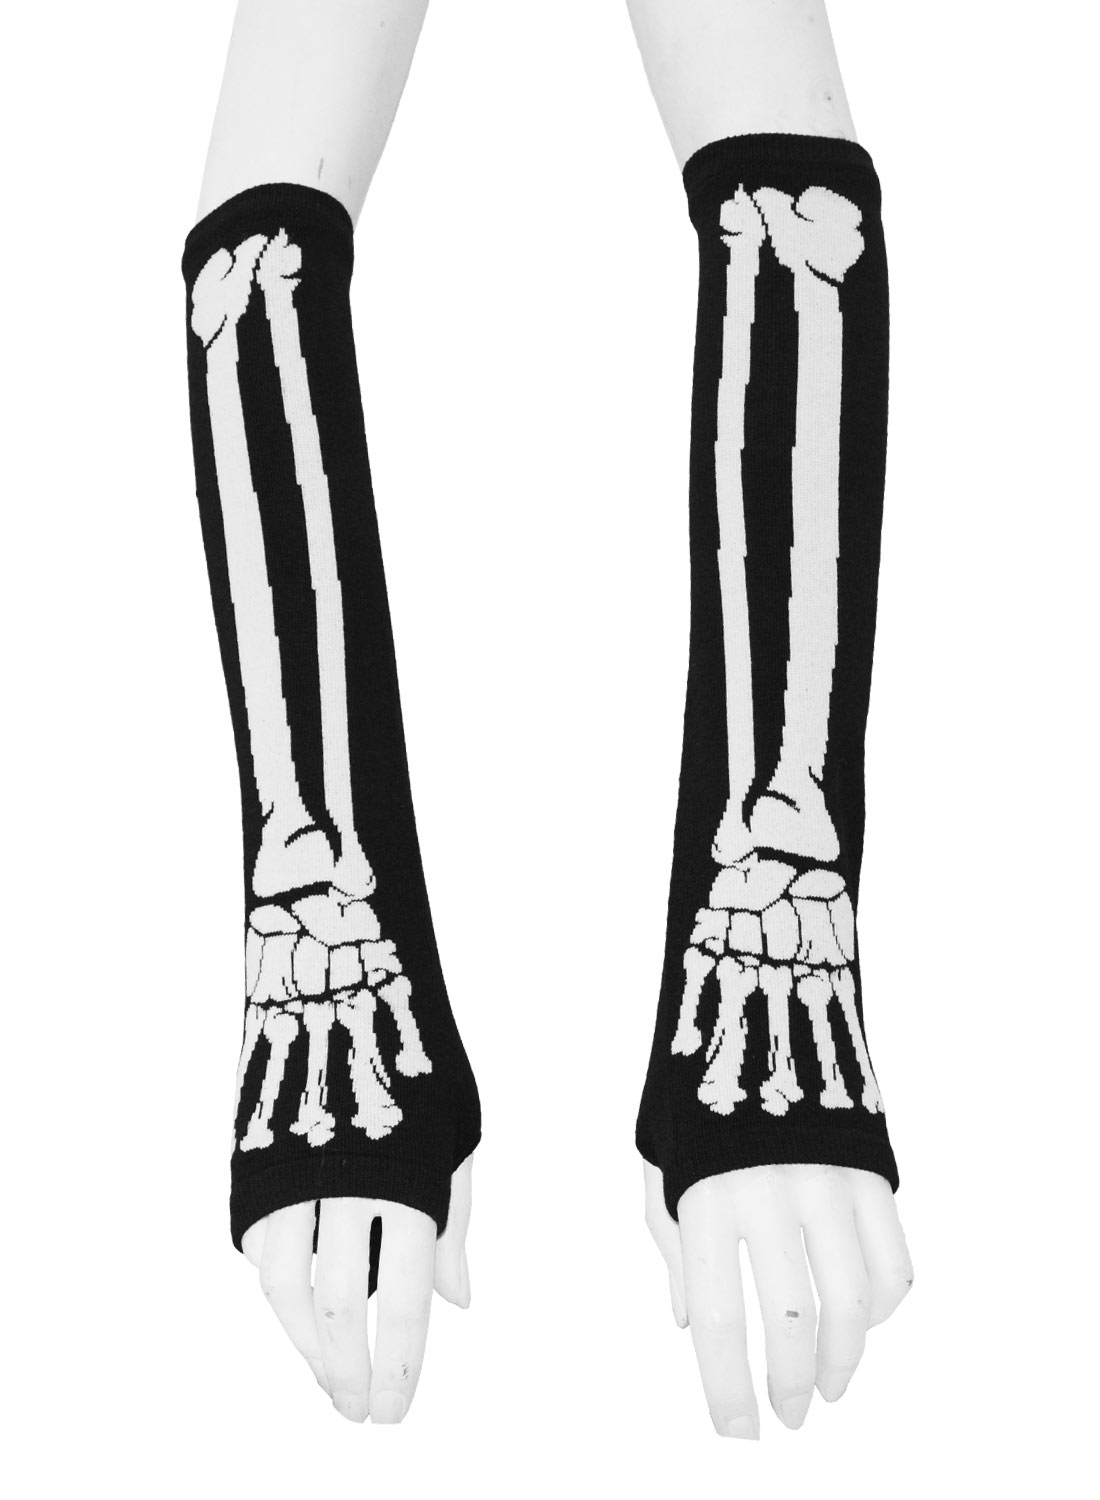 BGS Fingerless Gloves Long Black/White